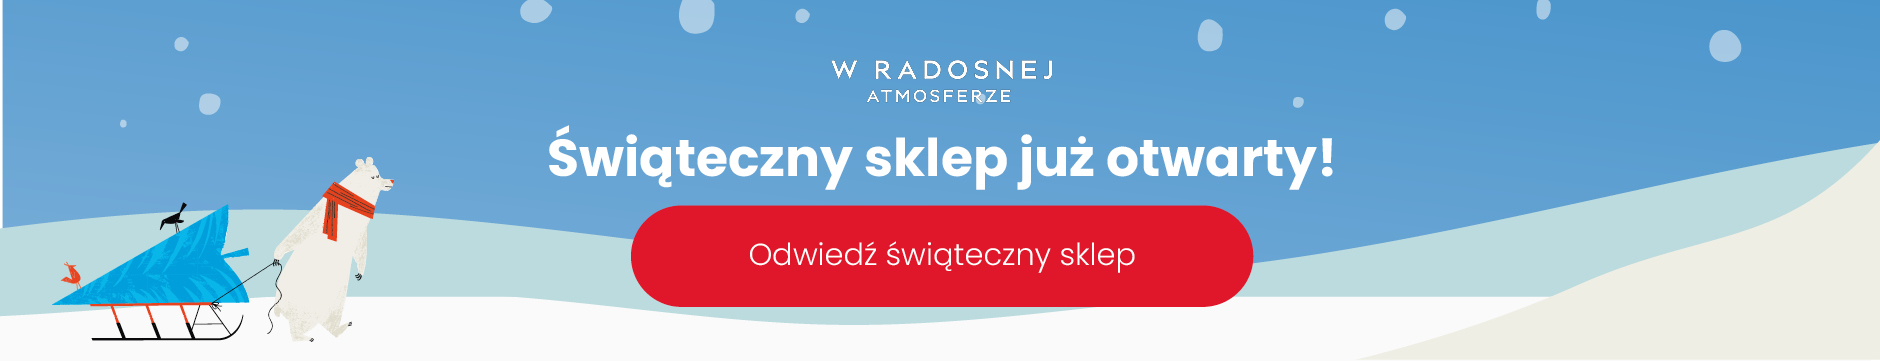 Świąteczny sklep jest otwarty HP Banner-Polish